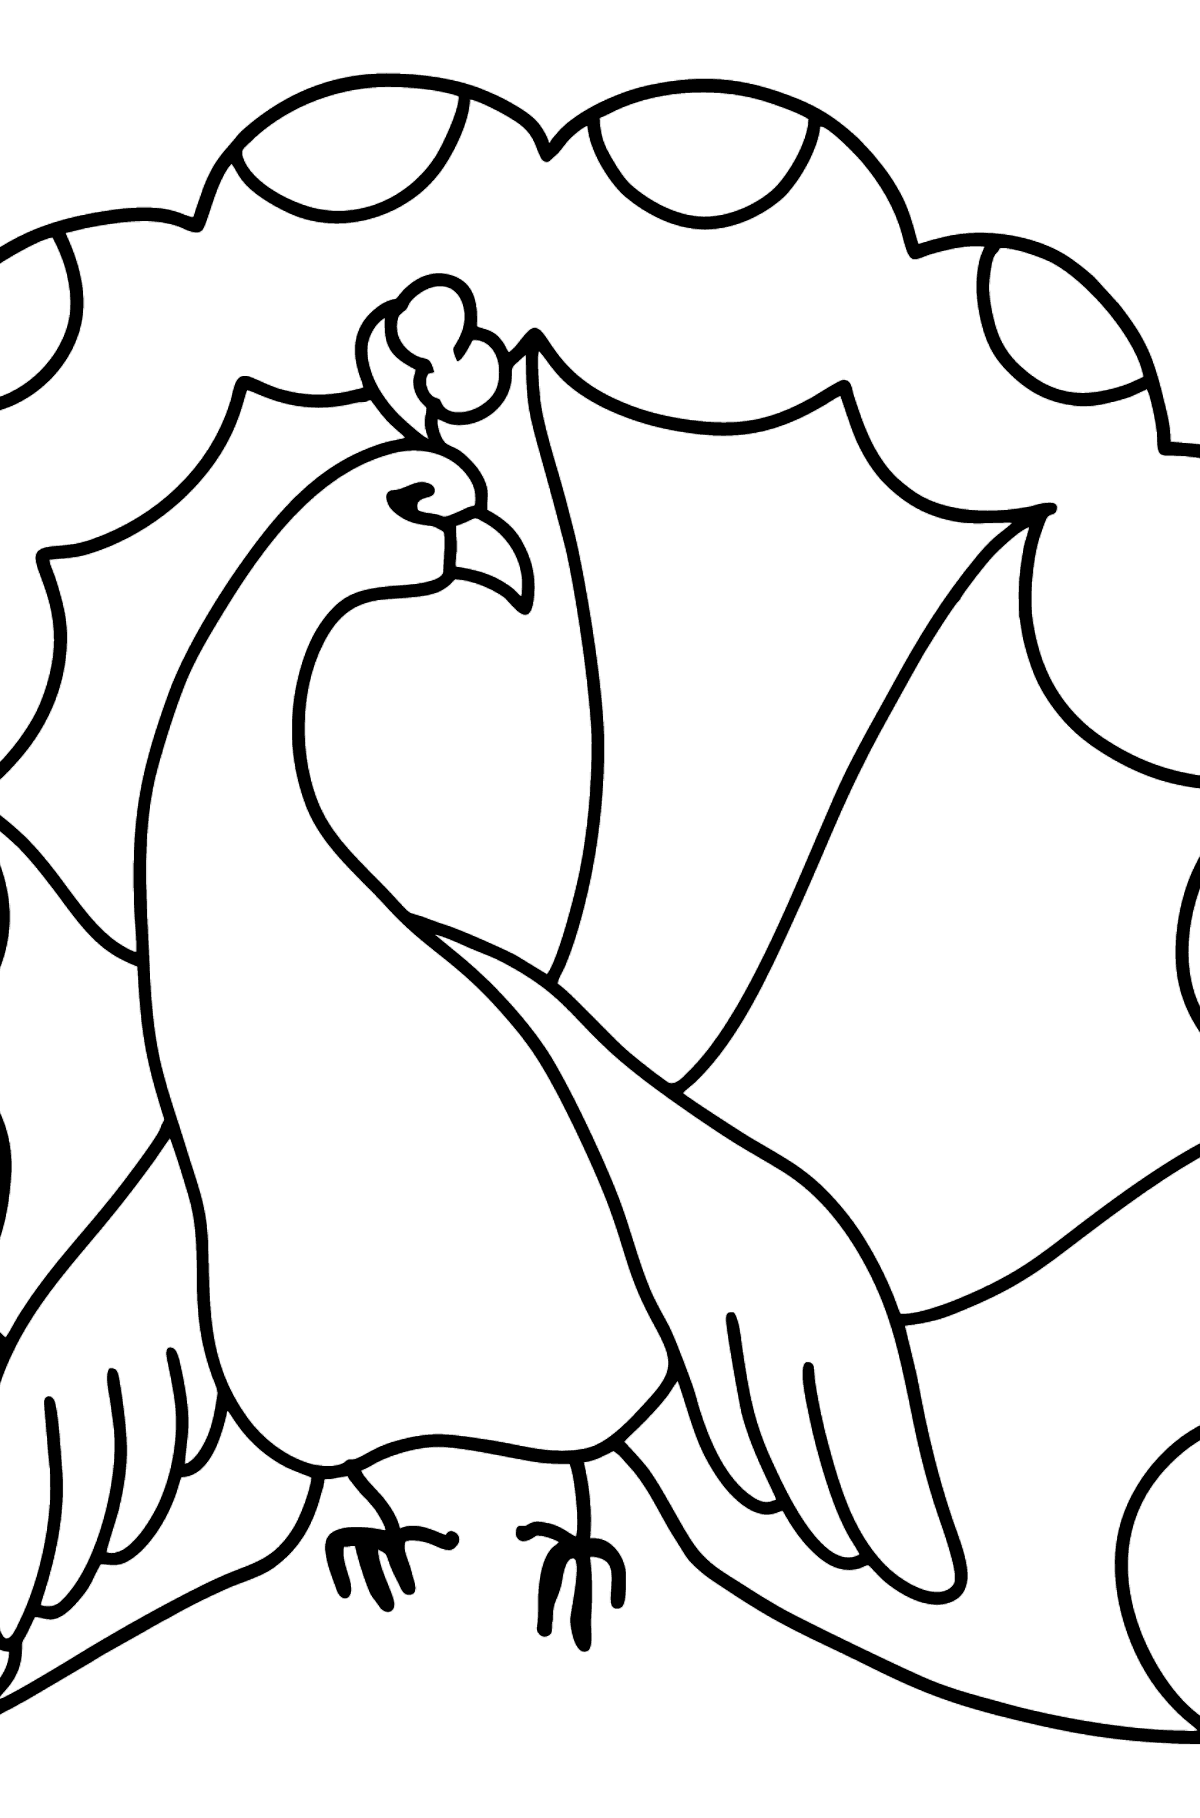 Tavuskuşu boyama sayfası - Boyamalar çocuklar için